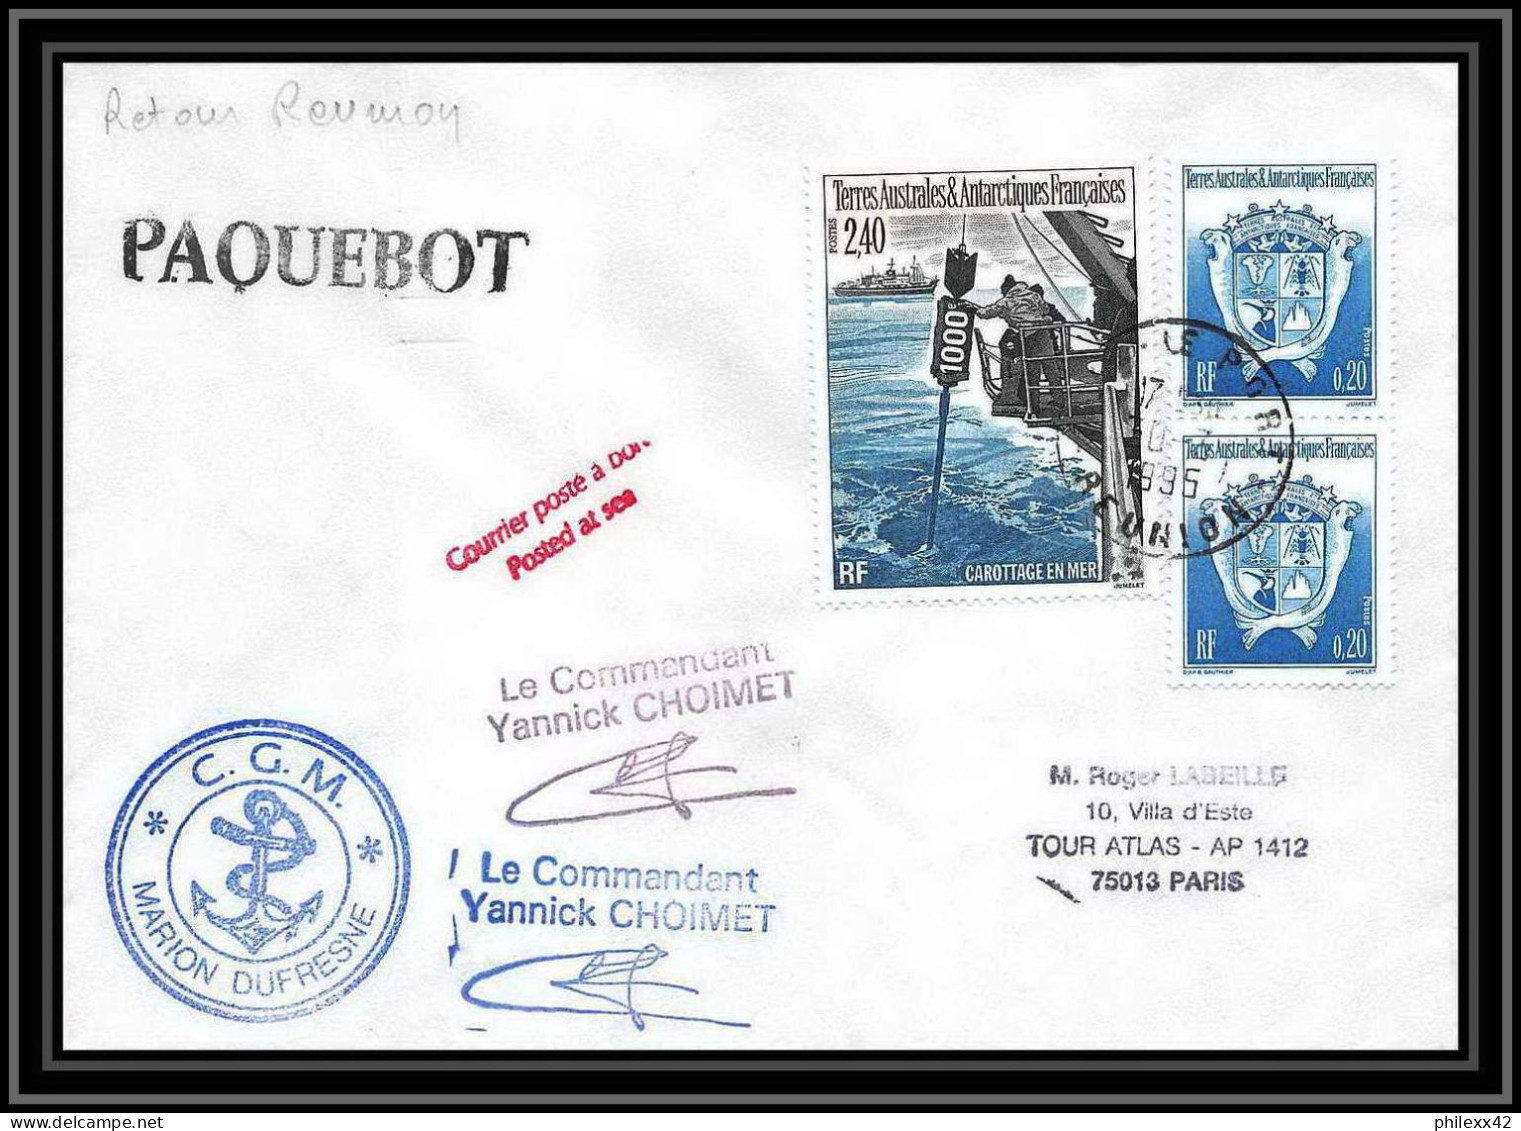 2346 ANTARCTIC Terres Australes TAAF Lettre Cover Dufresne 2 Retour Réunion 30/7/1995 Paquebot Signé Signed Choimet - Antarktis-Expeditionen